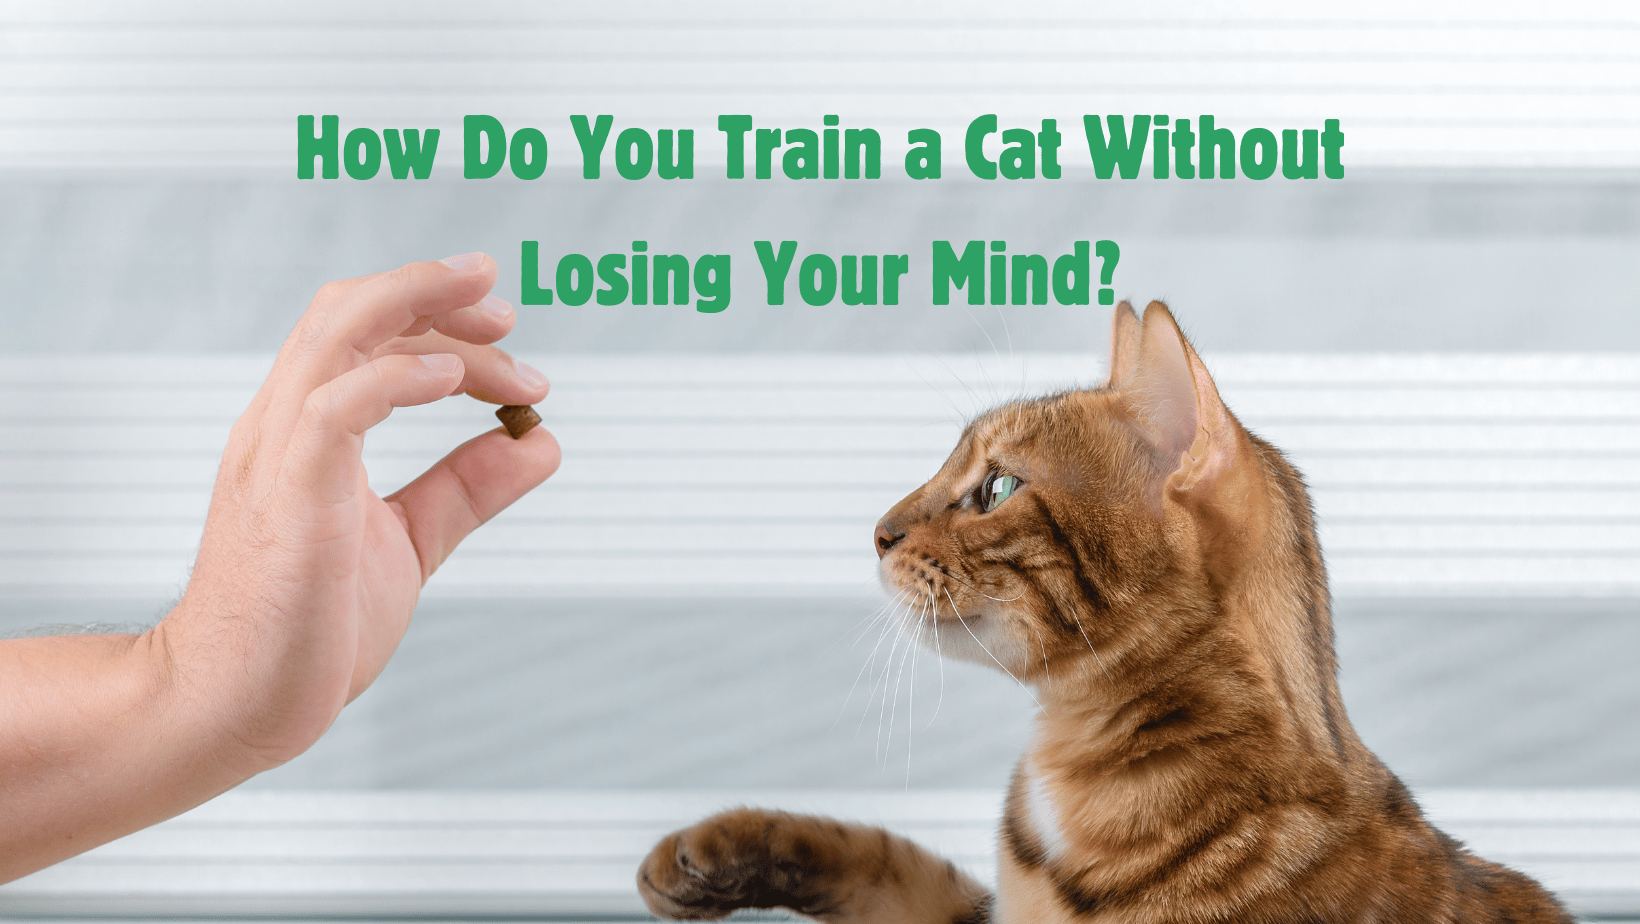 How do you train a cat